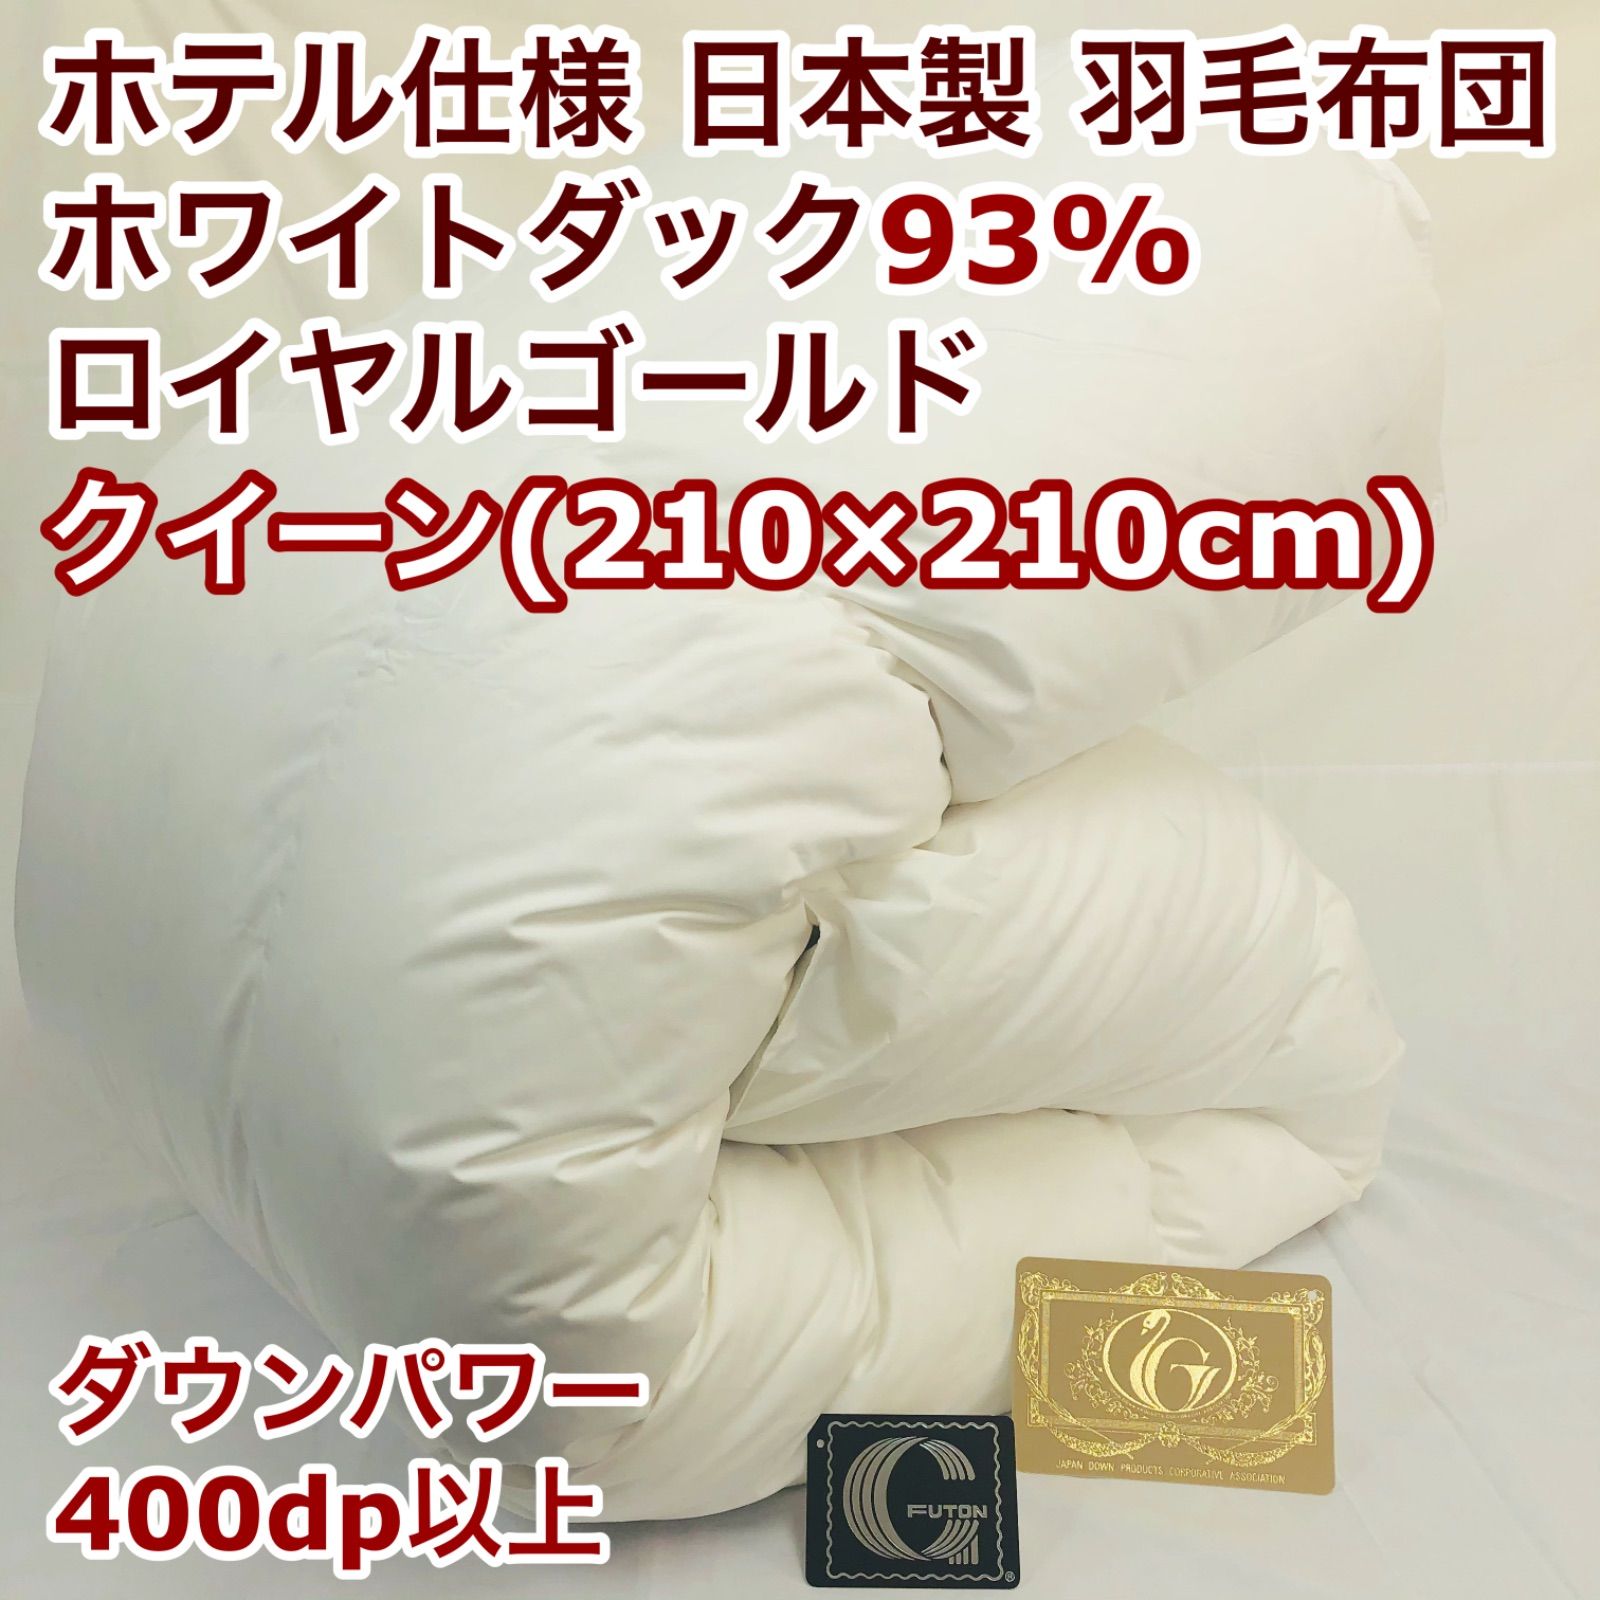 羽毛布団 クイーン ロイヤルゴールド ホワイトダック93% 白 日本製